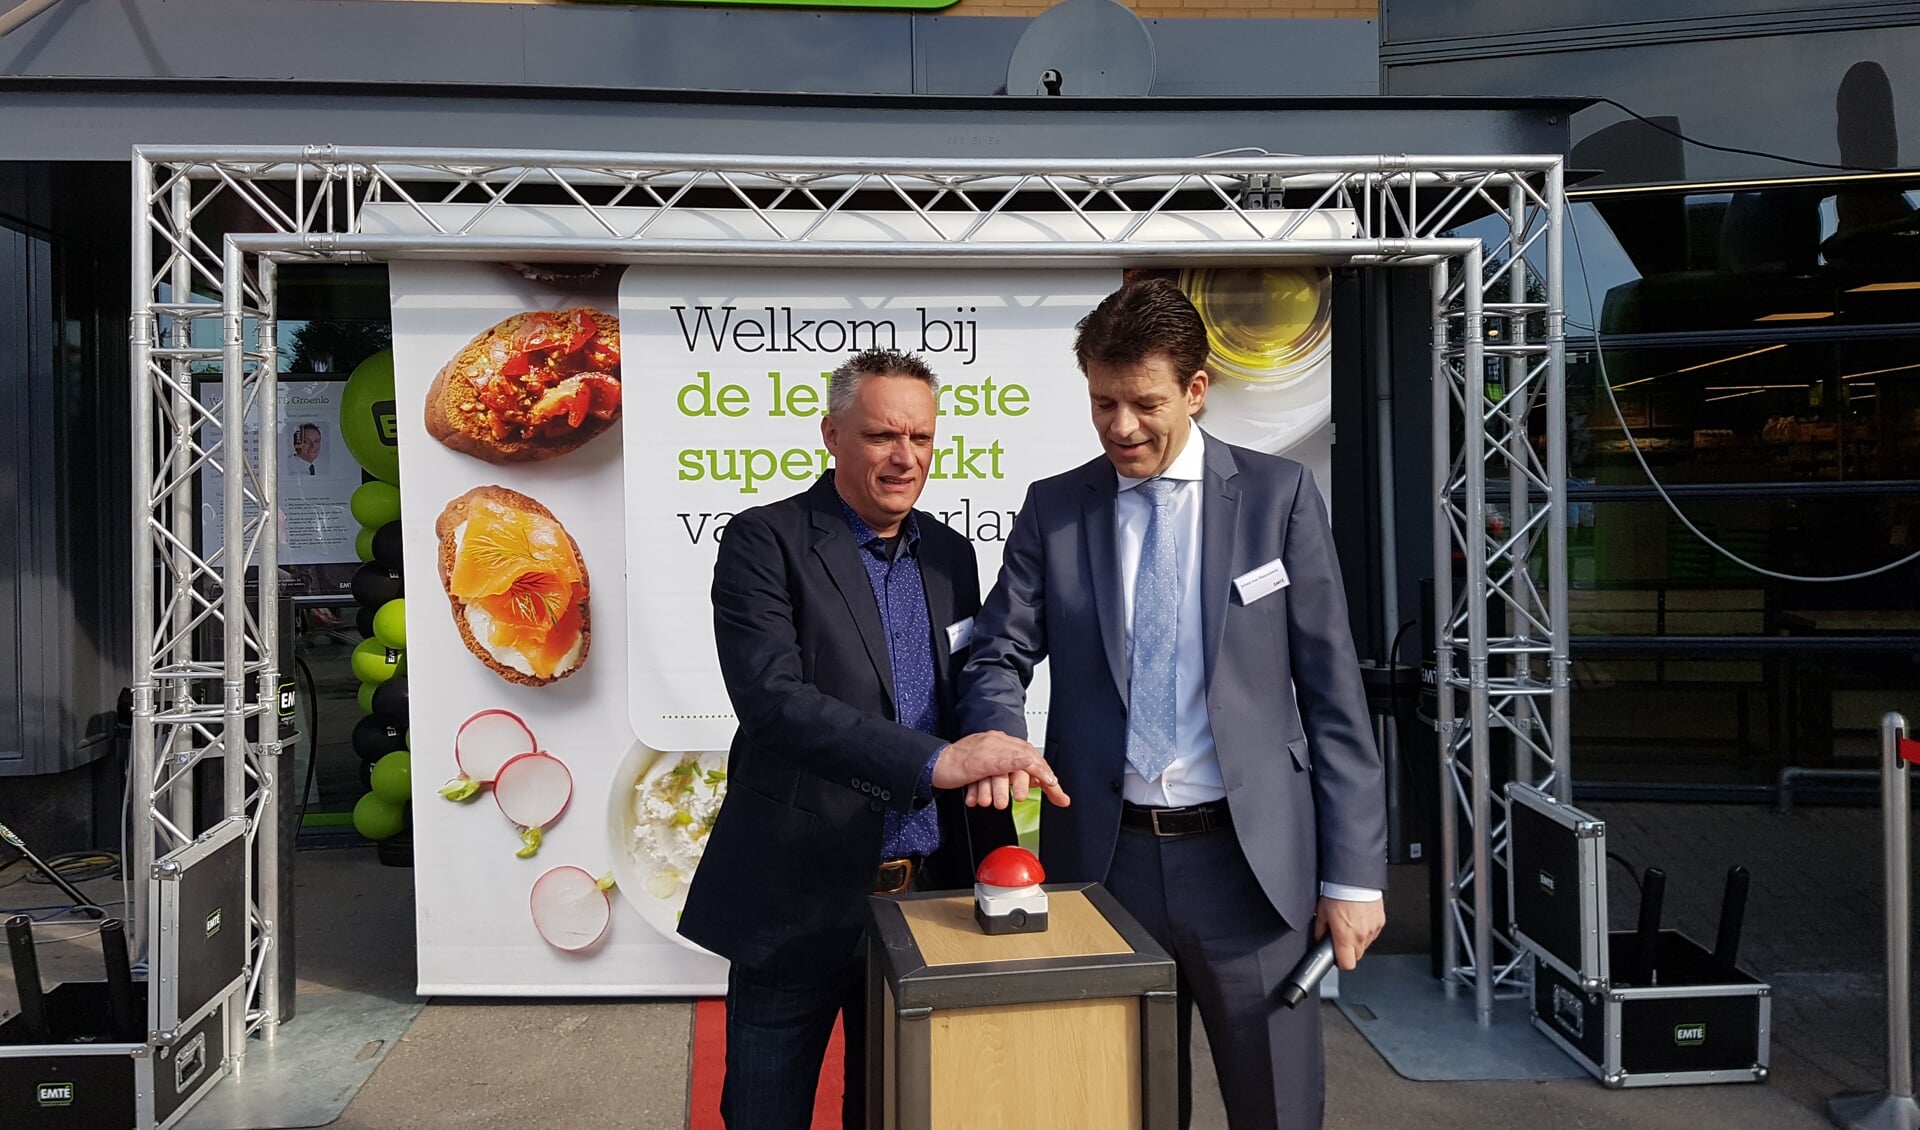 Supermarktmanager John Tiedink (l) en directeur Johan van Heersbeek openen de vernieuwde supermarkt. Foto: Kyra Broshuis